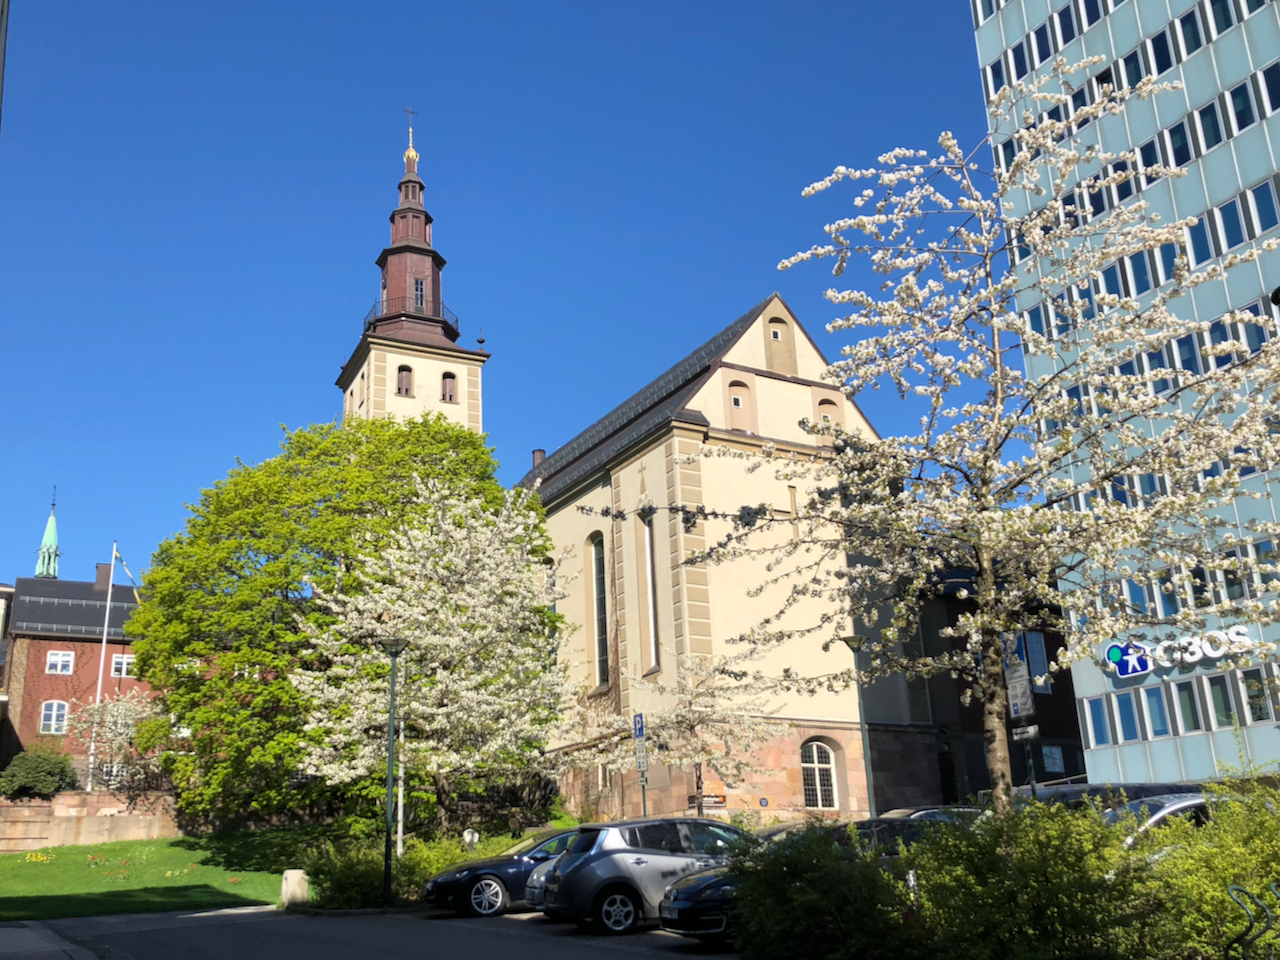 Margaretakyrkan i Oslo på våren. Klar himmel och blomstrande körsbärsträd.